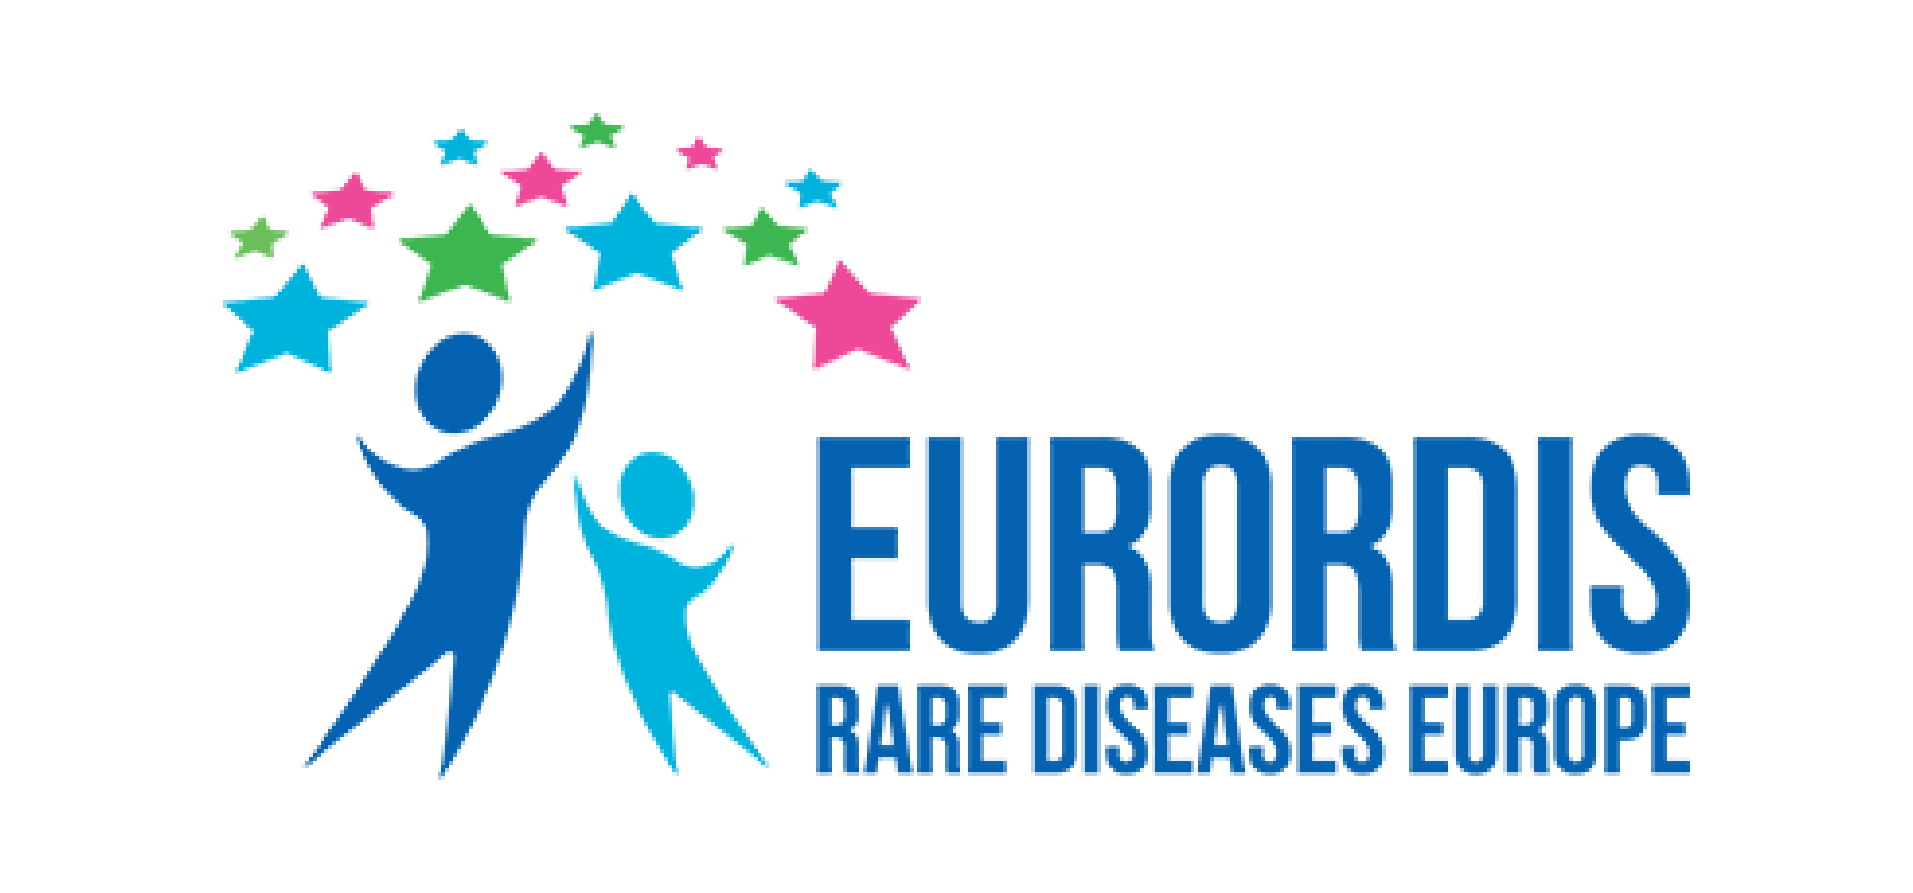 Eurordis logo